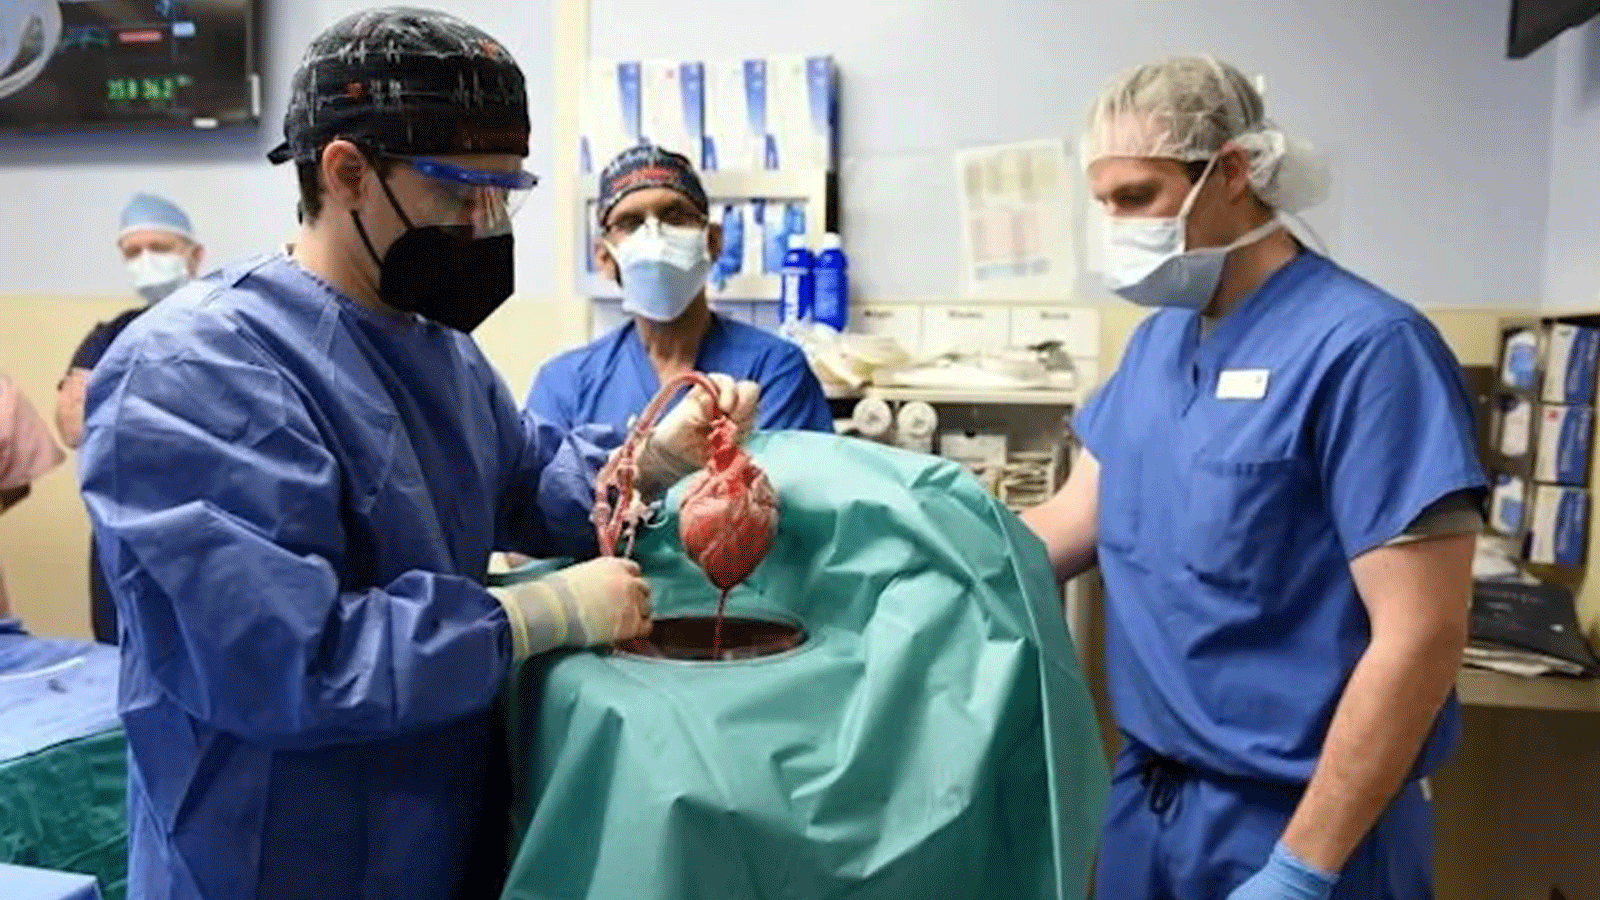 صورة قدمتها كلية الطب بجامعة ميريلاند في 10 كانون الثاني/يناير 2022 لجراحين يجرون عملية زرع قلب من خنزير معدل وراثيًا للمريض ديفيد بينيت، في بالتيمور، ماريلاند 